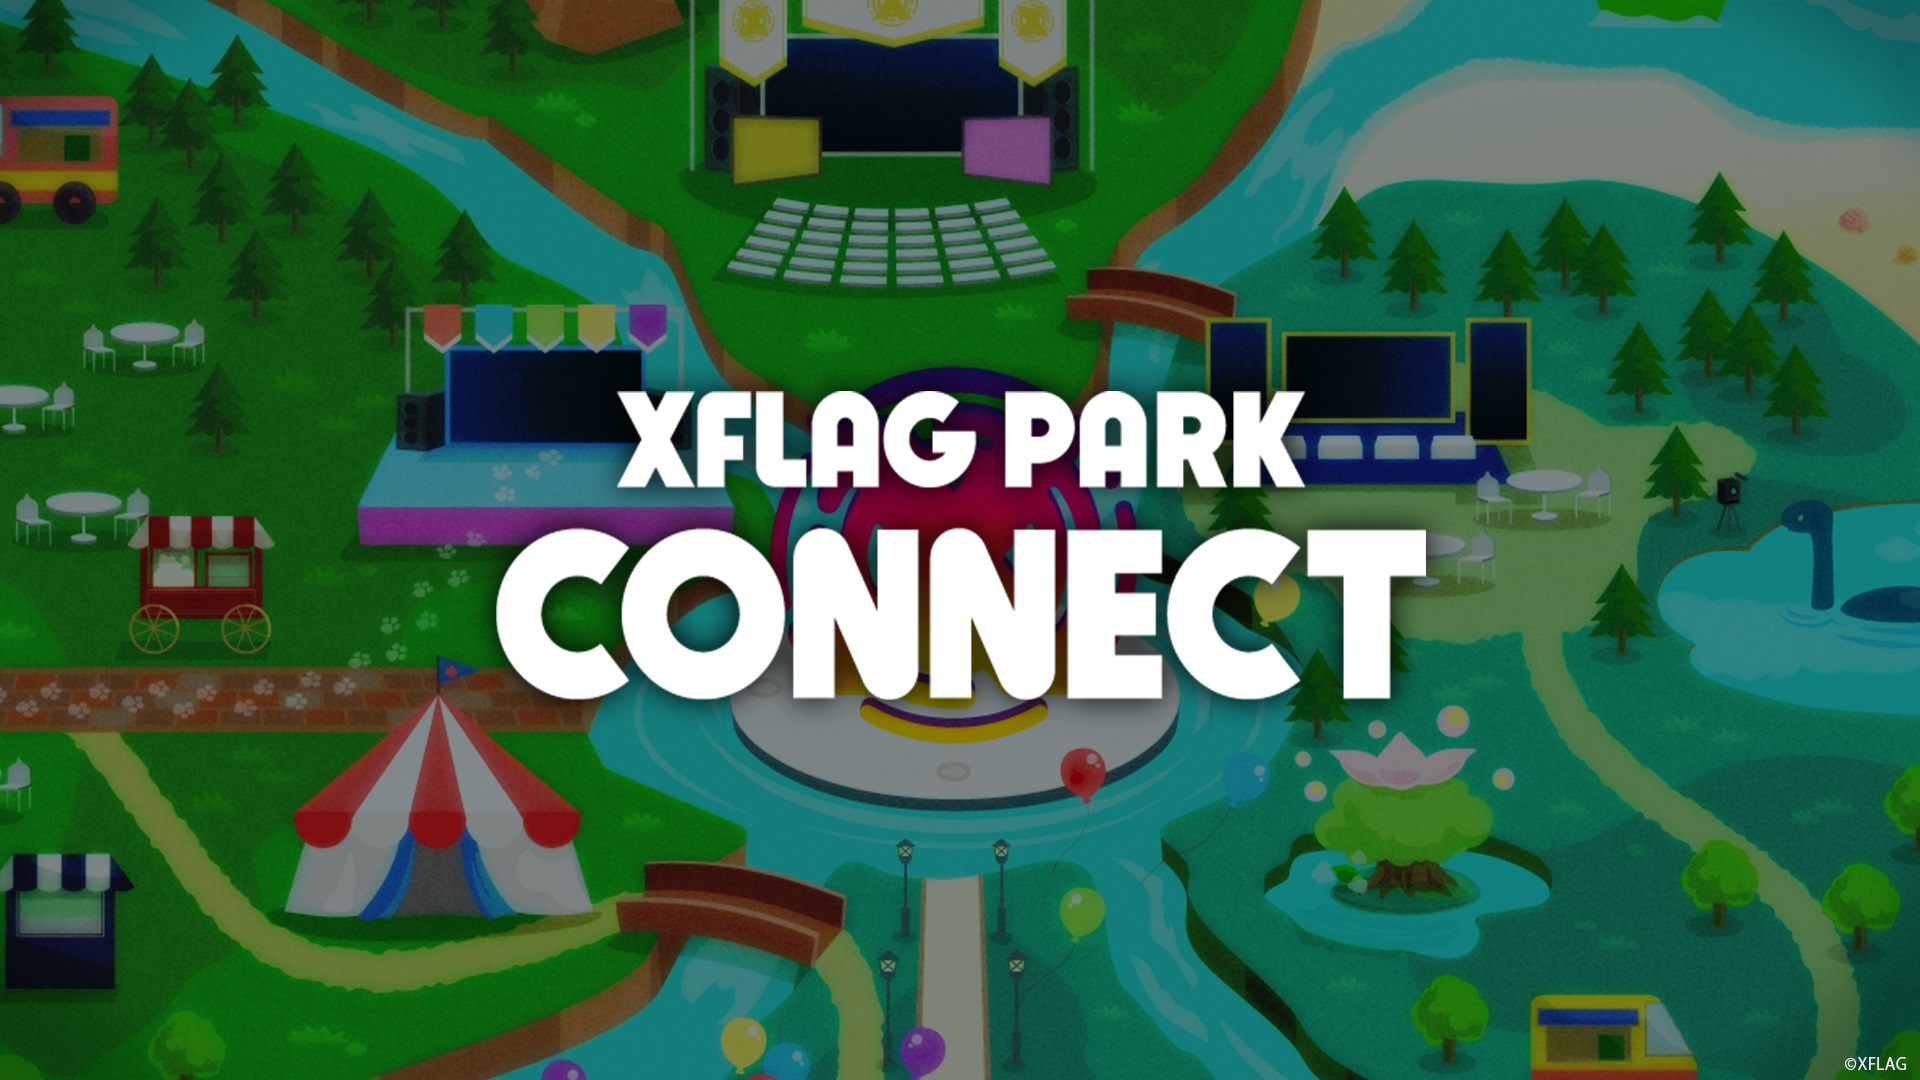 初のオンライン開催 Xflag Park 無料webサイトで視聴し Parkオラゴン をget オンラインテーマパーク Xflag Park Connect 株式会社ミクシィのプレスリリース